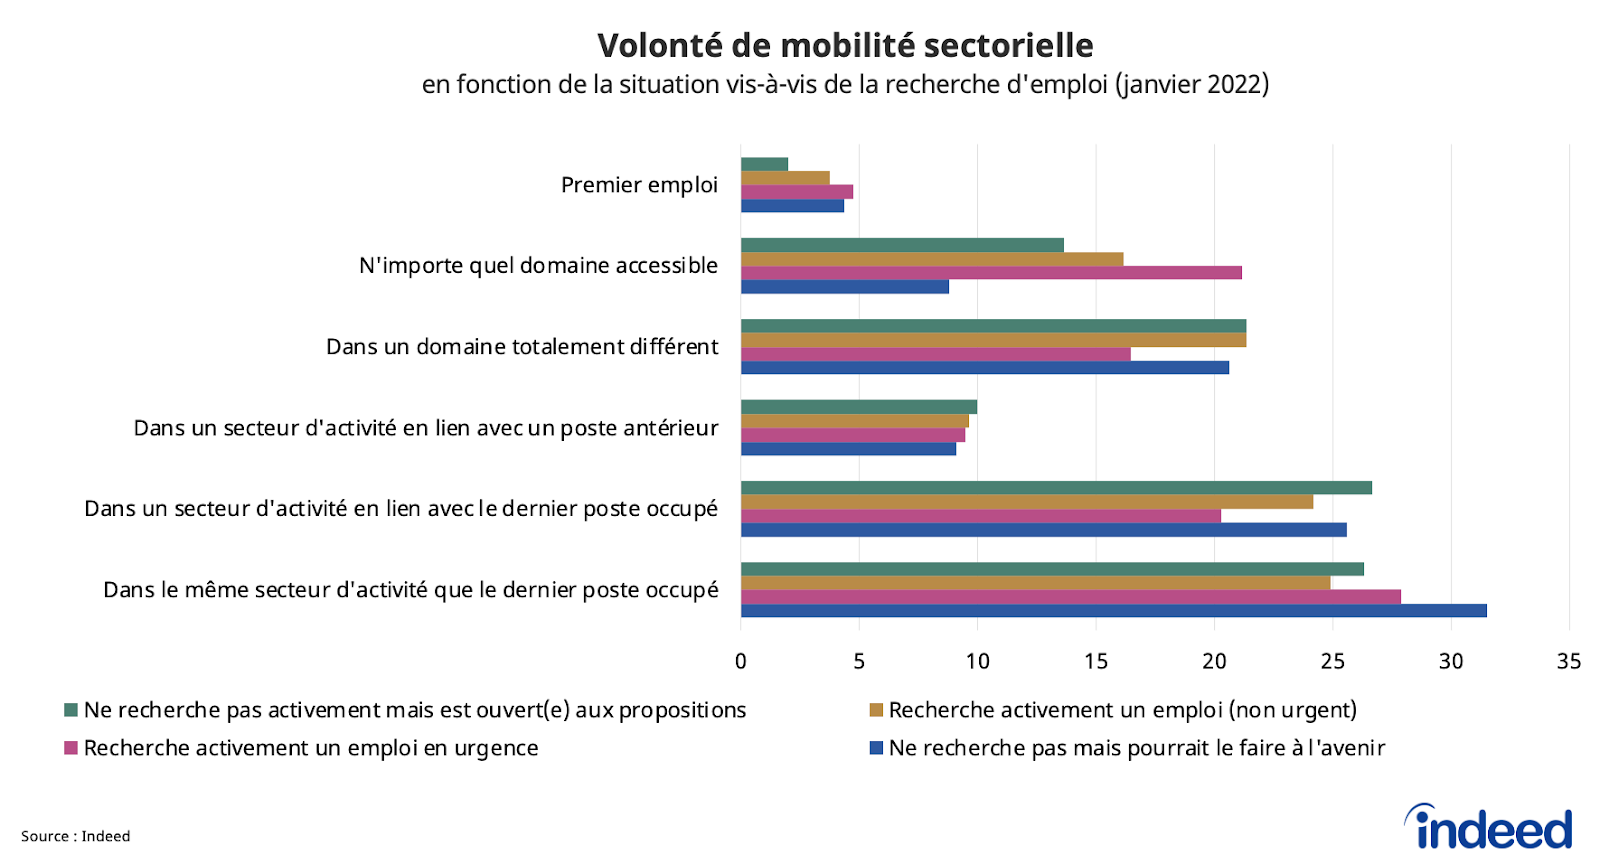 Cet histogramme présente dans quelle mesure les candidats potentiels sont ouverts à la mobilité sectorielle, en fonction de la situation vis-à-vis de la recherche d’emploi, pour le mois janvier 2022.